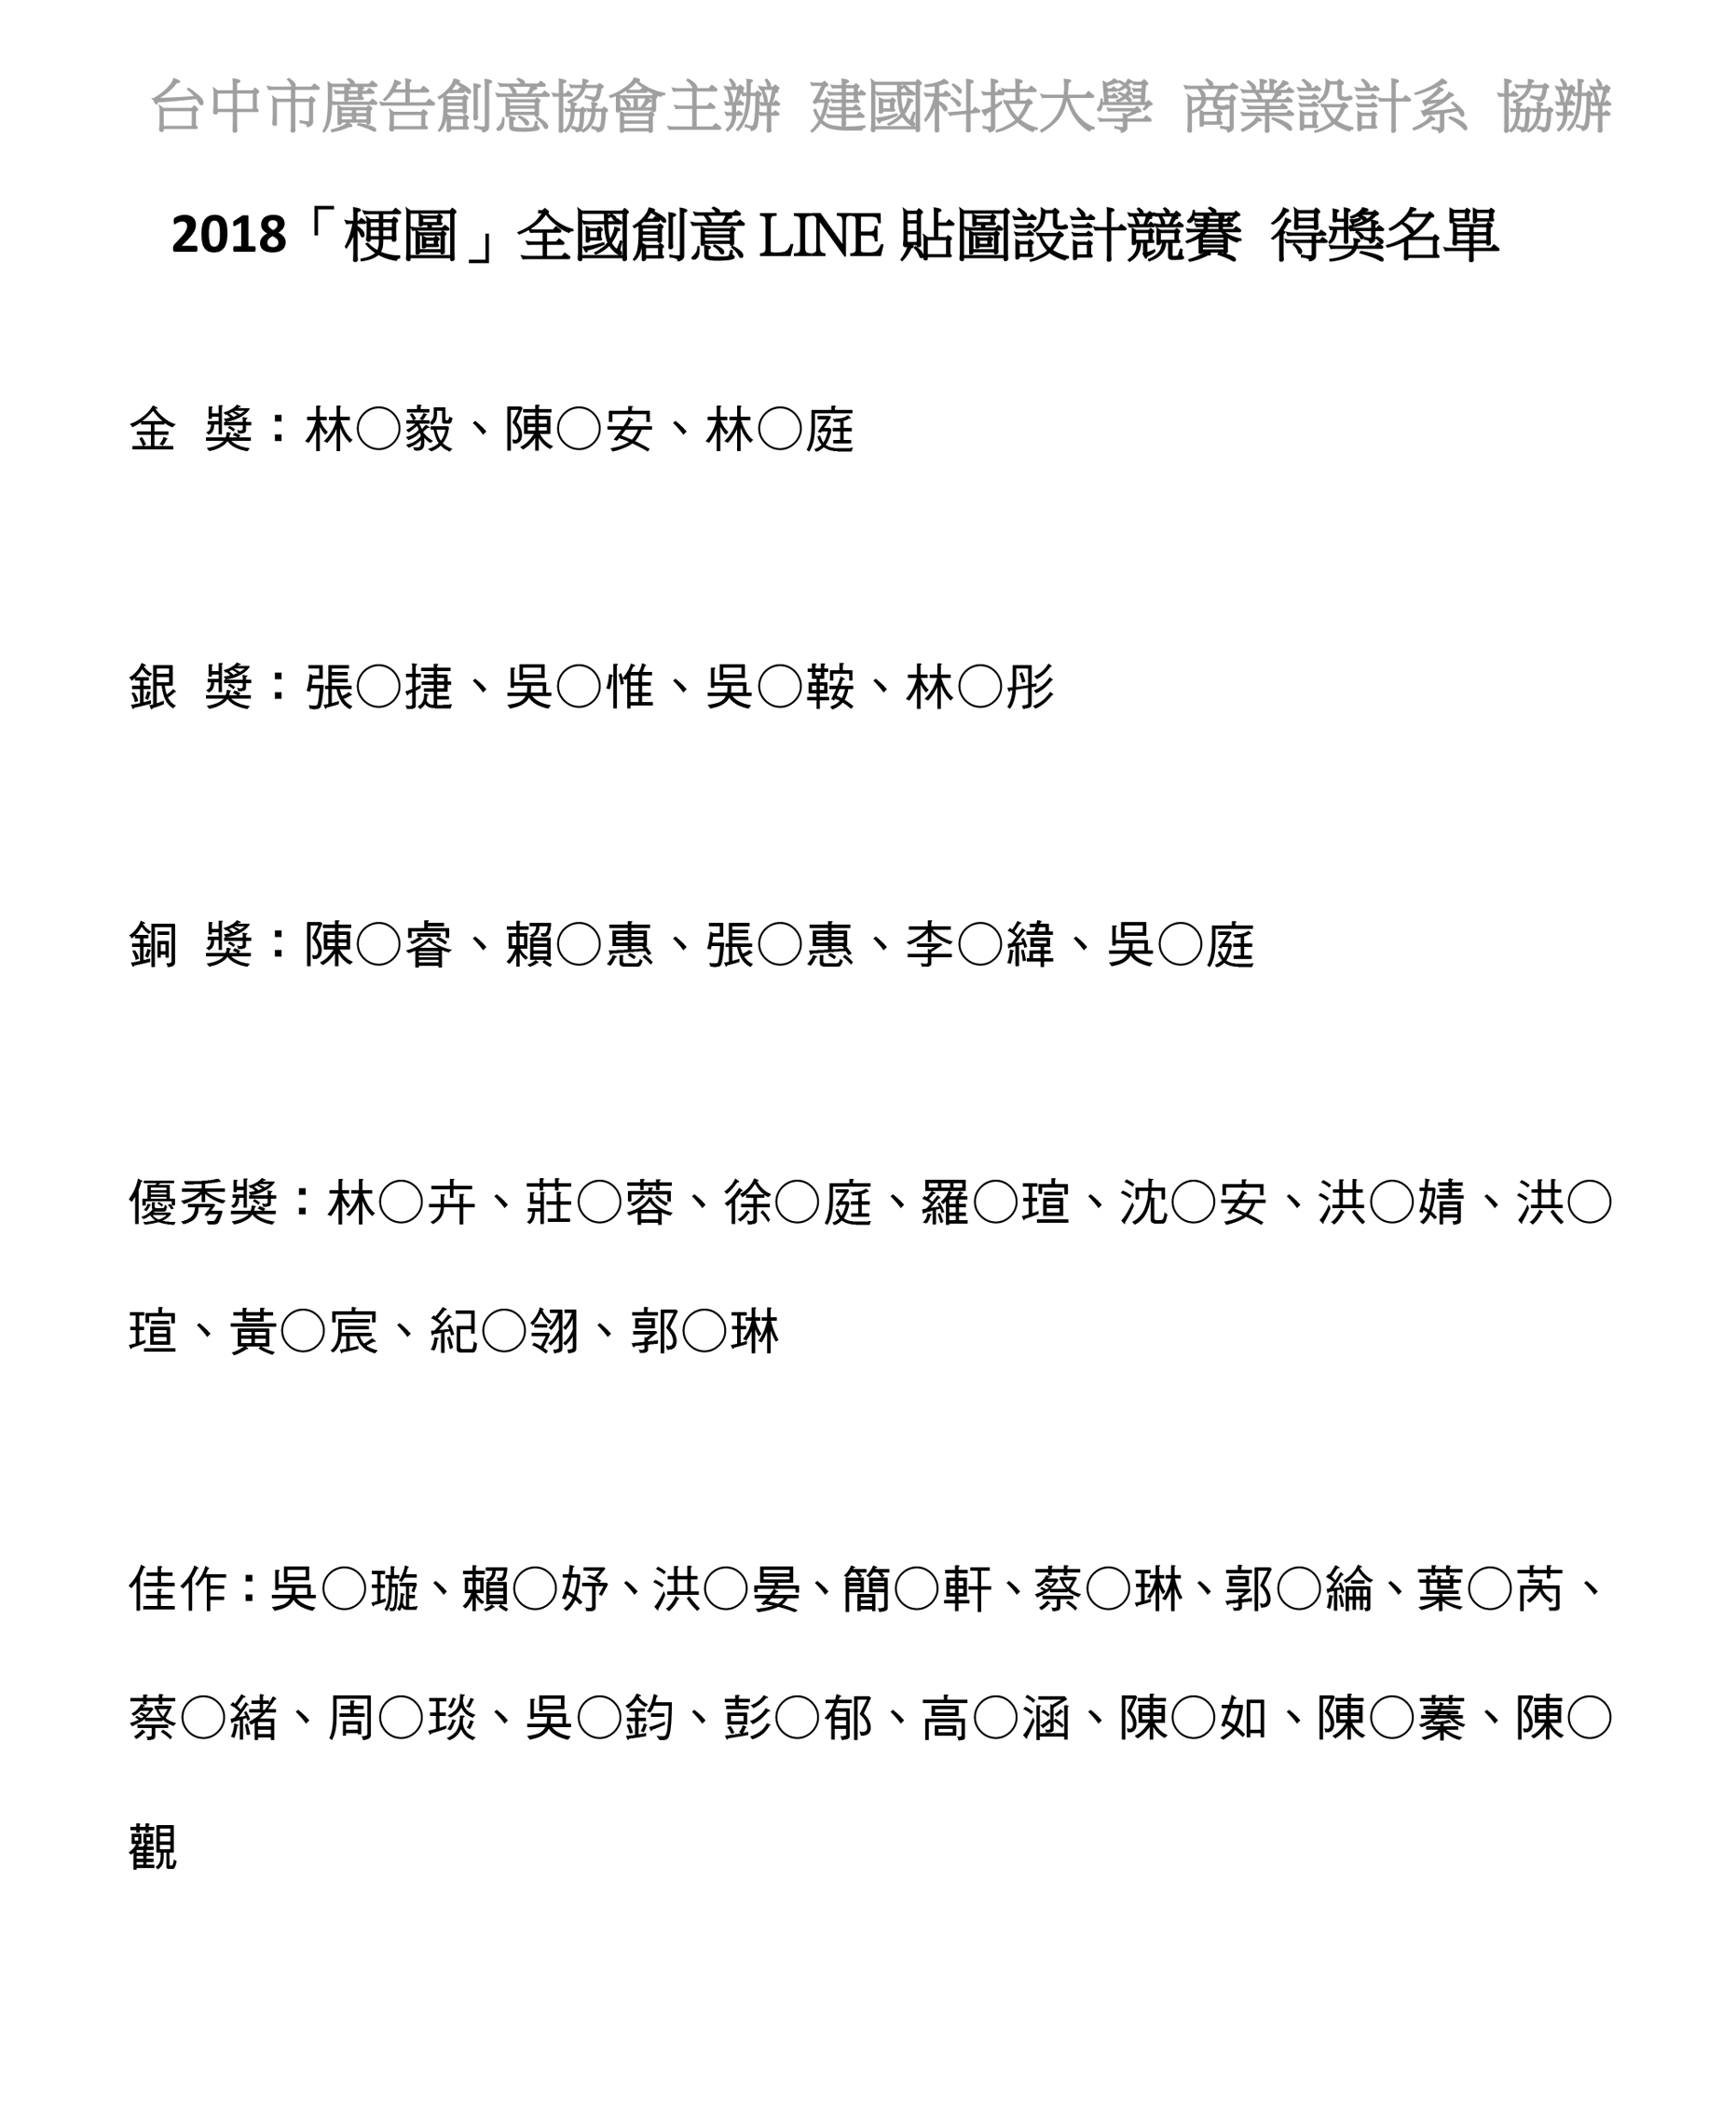 圖檔：2018【梗圖】LINE貼圖設計競賽得獎名單